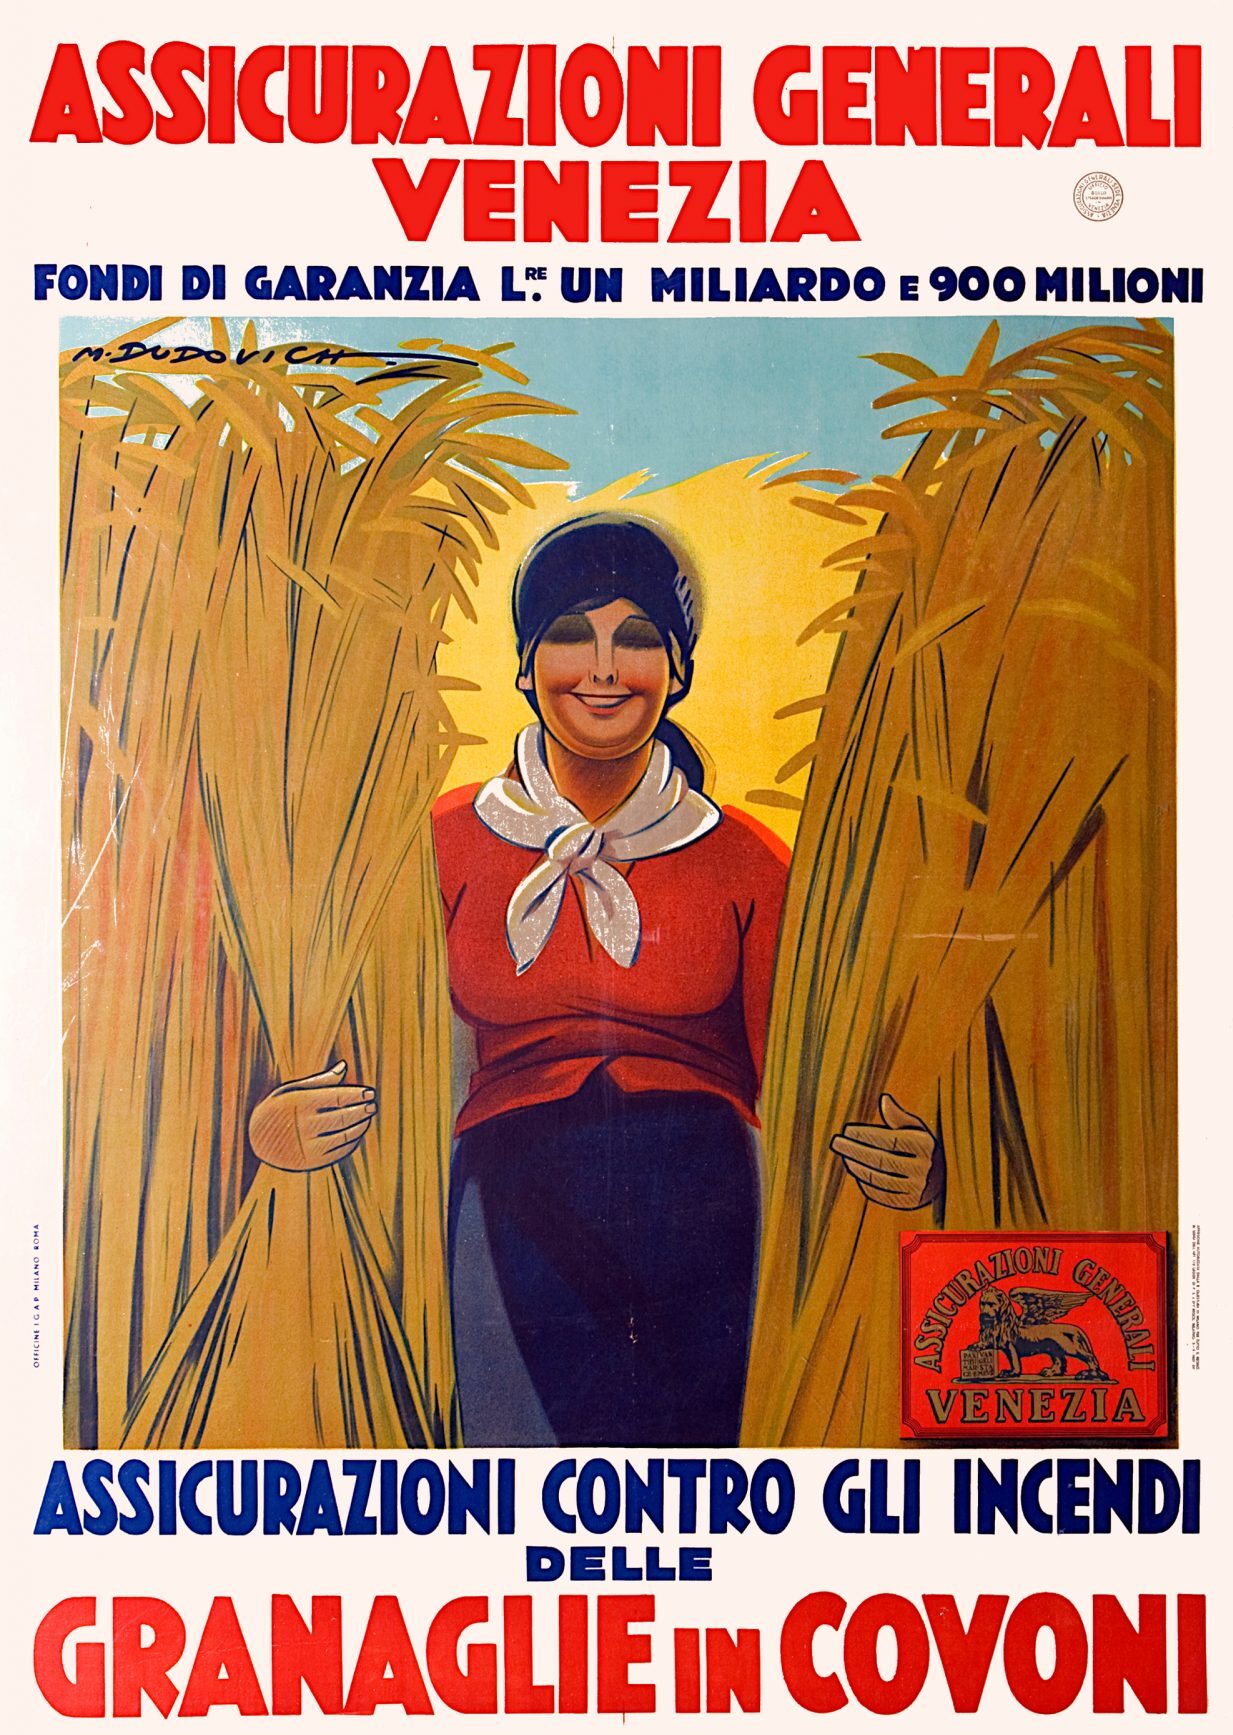 Marcello Dudovich, Assicurazioni Generali Venezia advertising poster (1926)